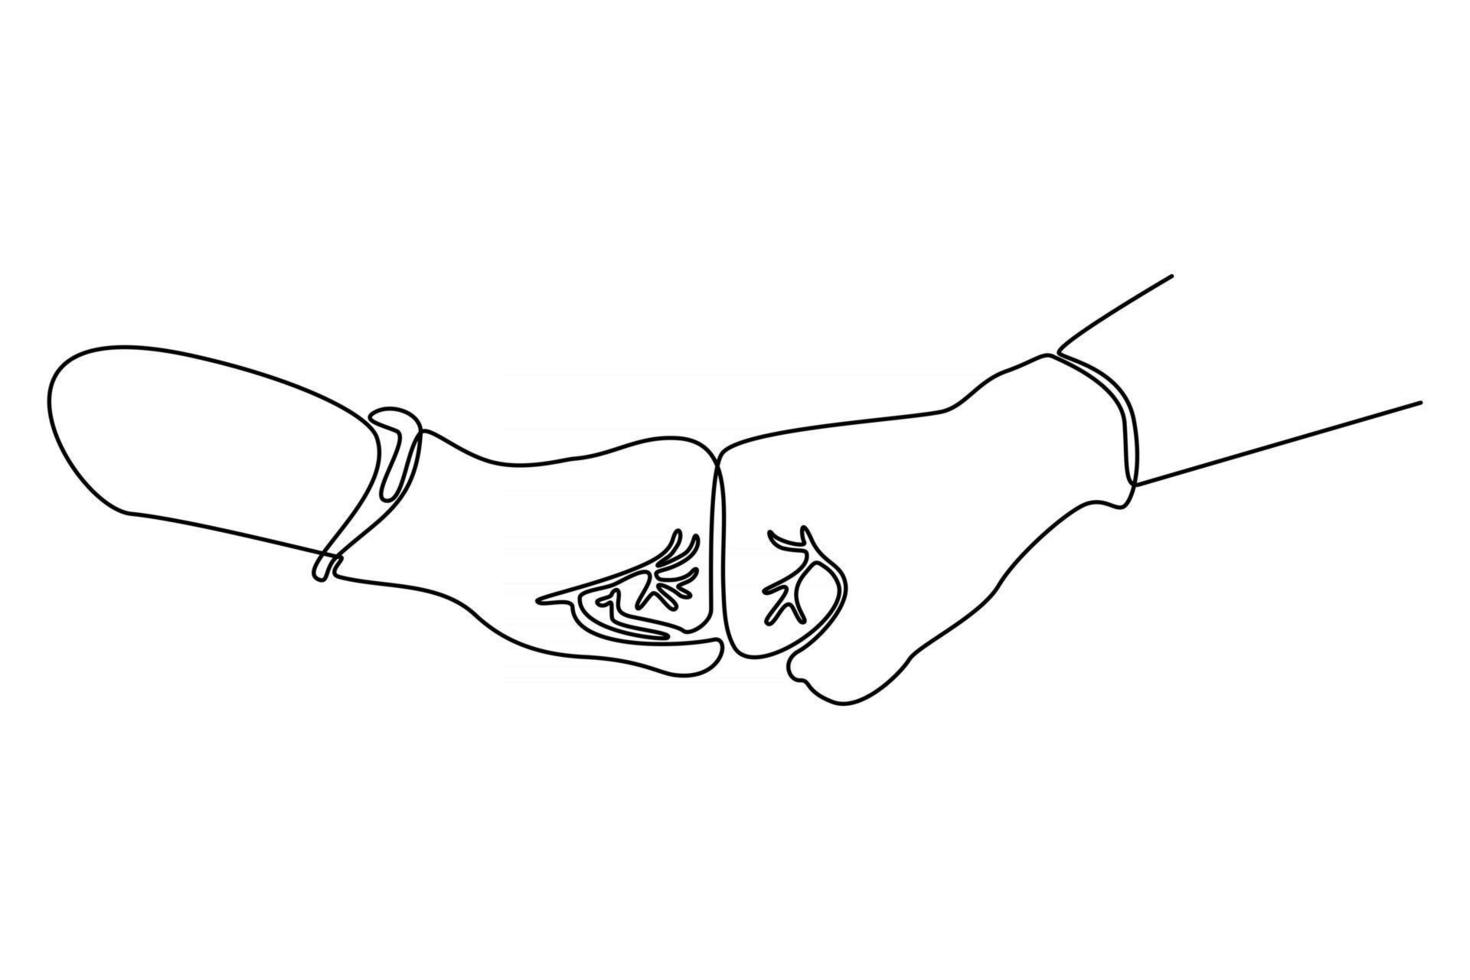 Línea continua de dos manos con guantes protectores contra el virus corona ilustración vectorial vector